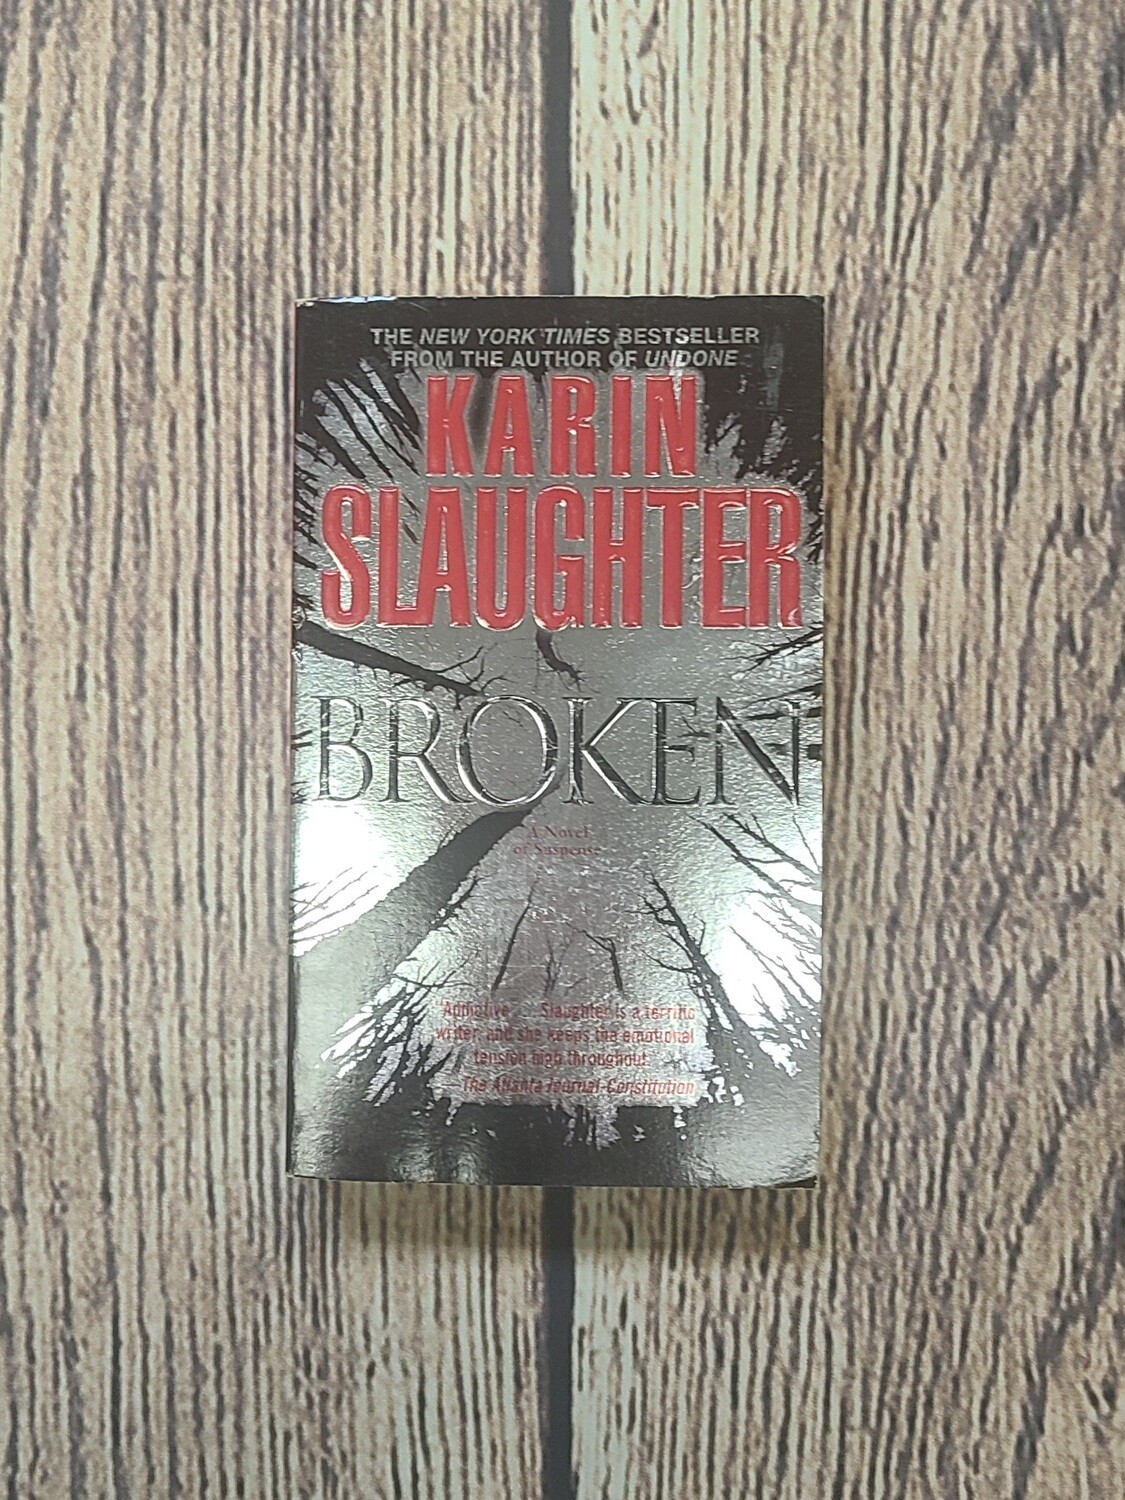 Broken by Karin Slaughter